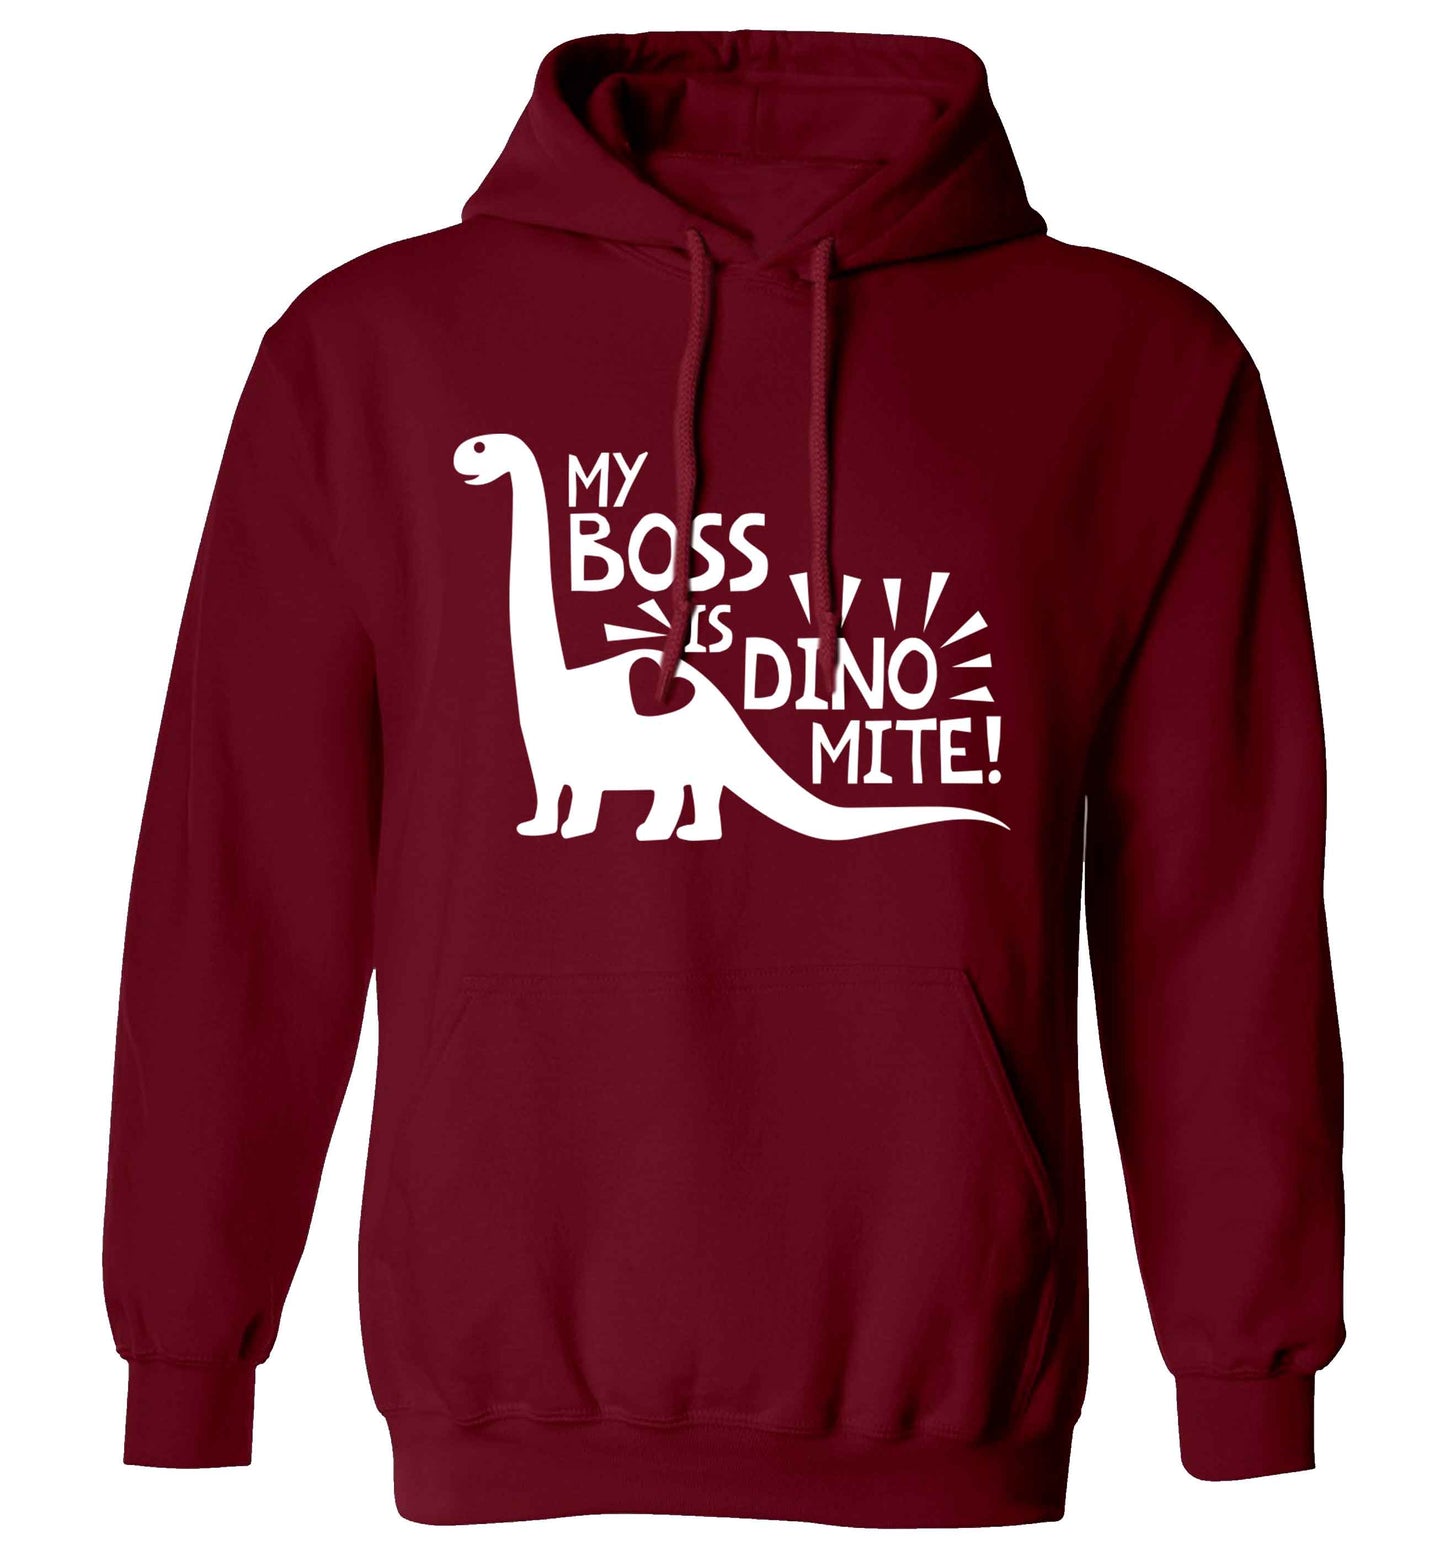 My boss is dinomite! adults unisex maroon hoodie 2XL